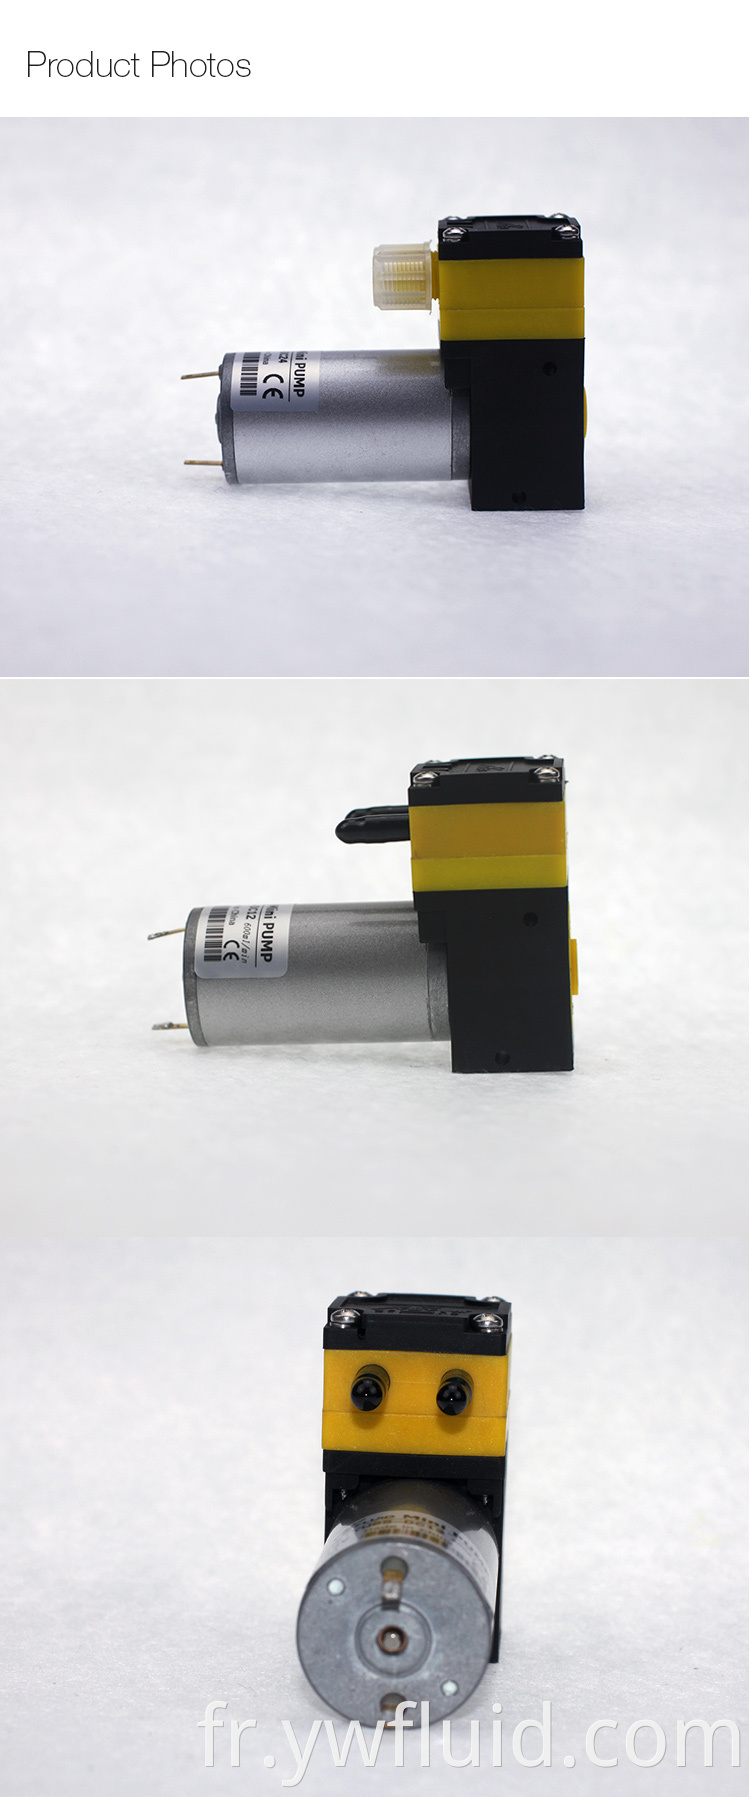 Micro pompe à diaphragme YWfluid pour imprimante à jet d'encre avec débit 600 ml/min utilisée pour l'impression à jet d'encre